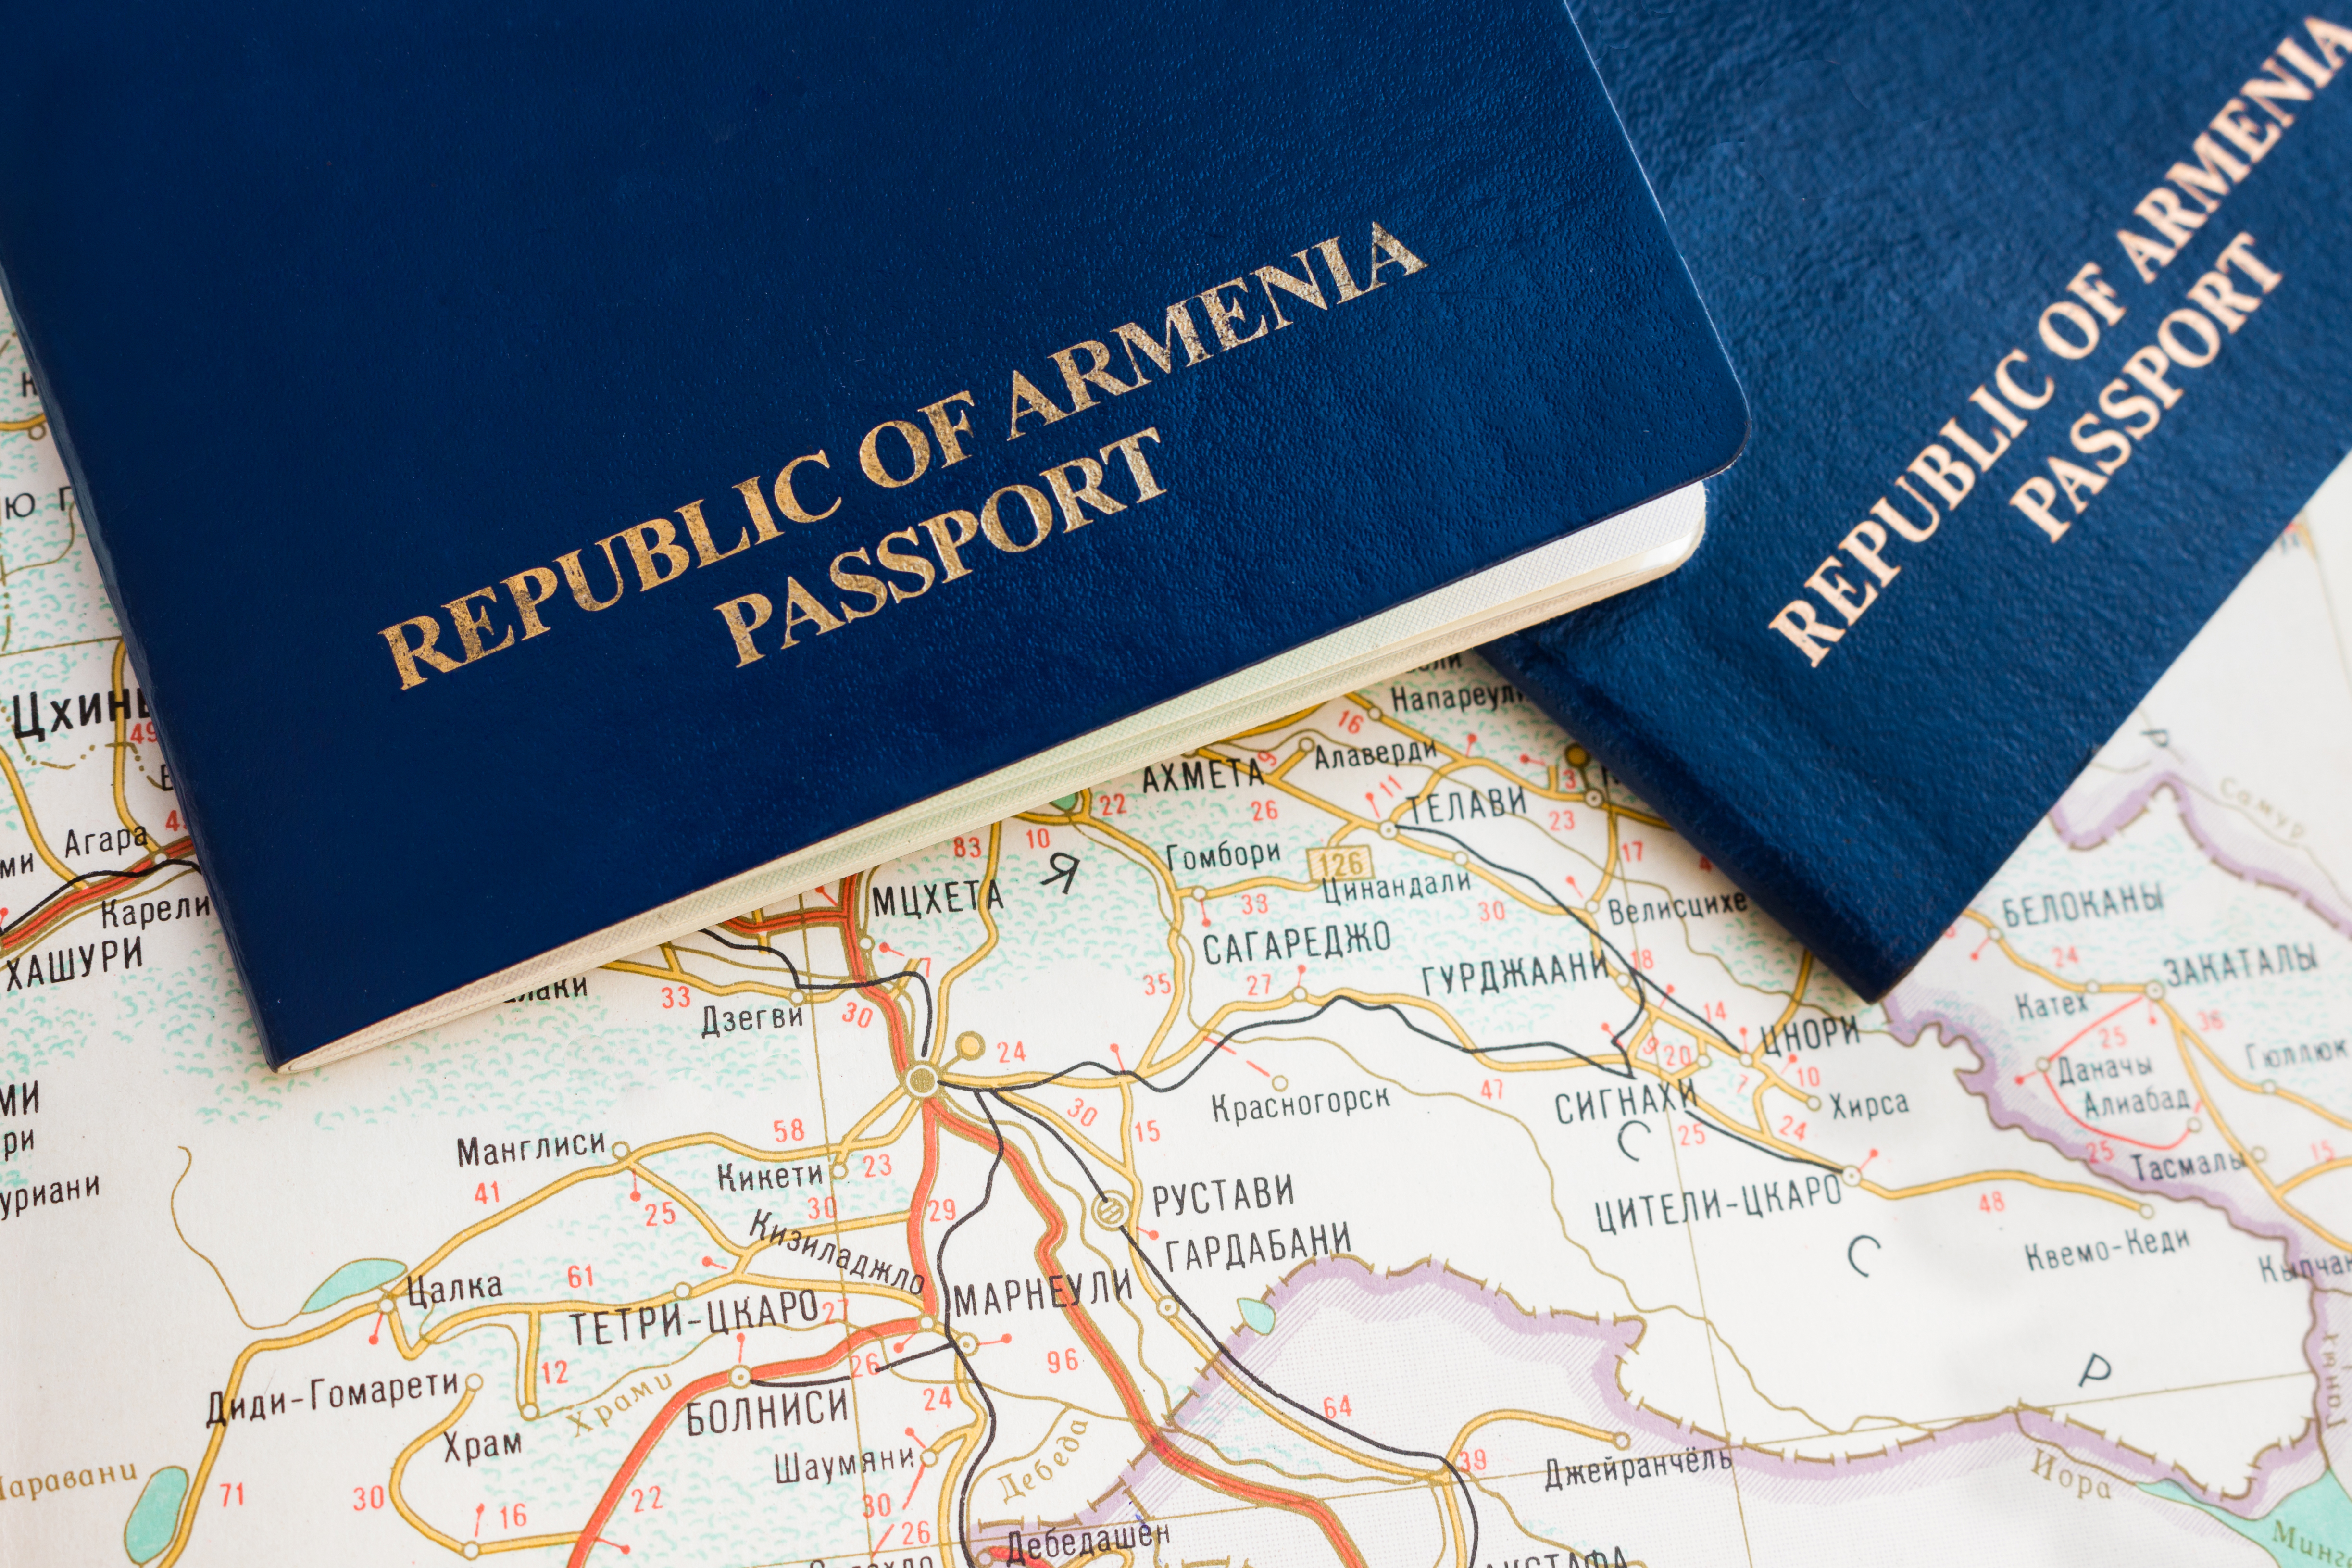 Двойное гражданство в Армении